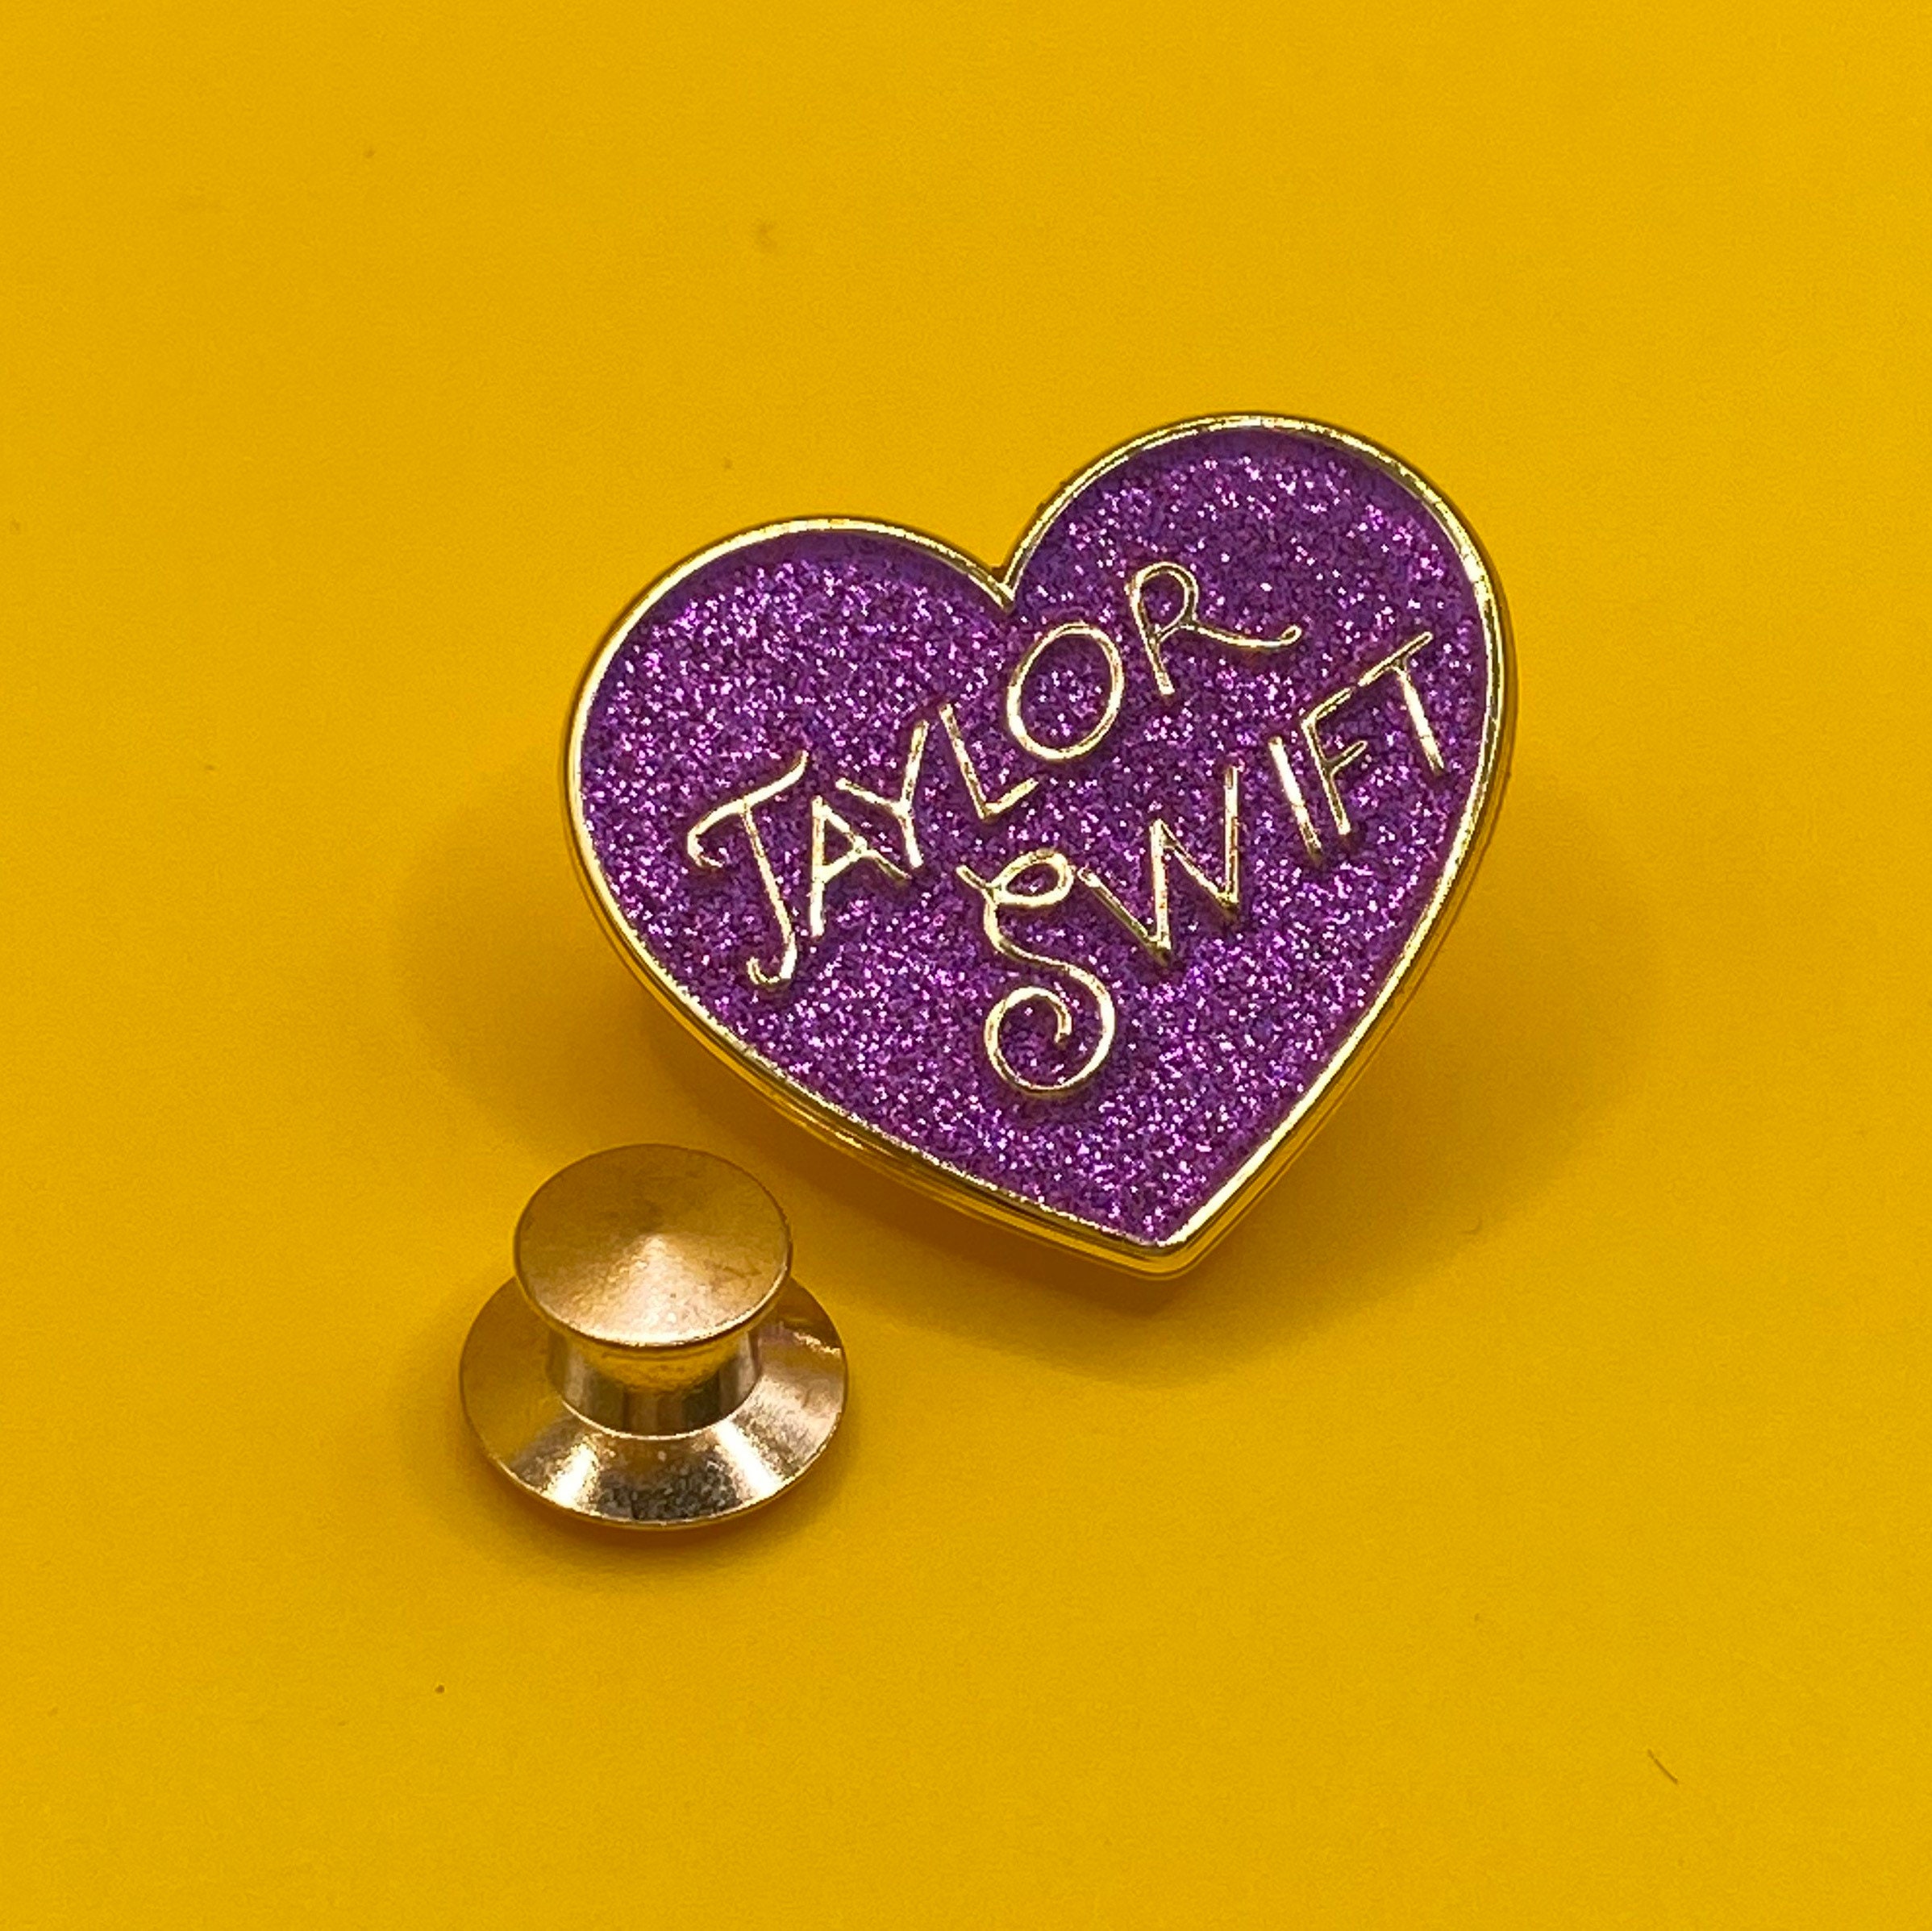 Stylish Taylor Swift Lyric Pin Badges - Set of 9